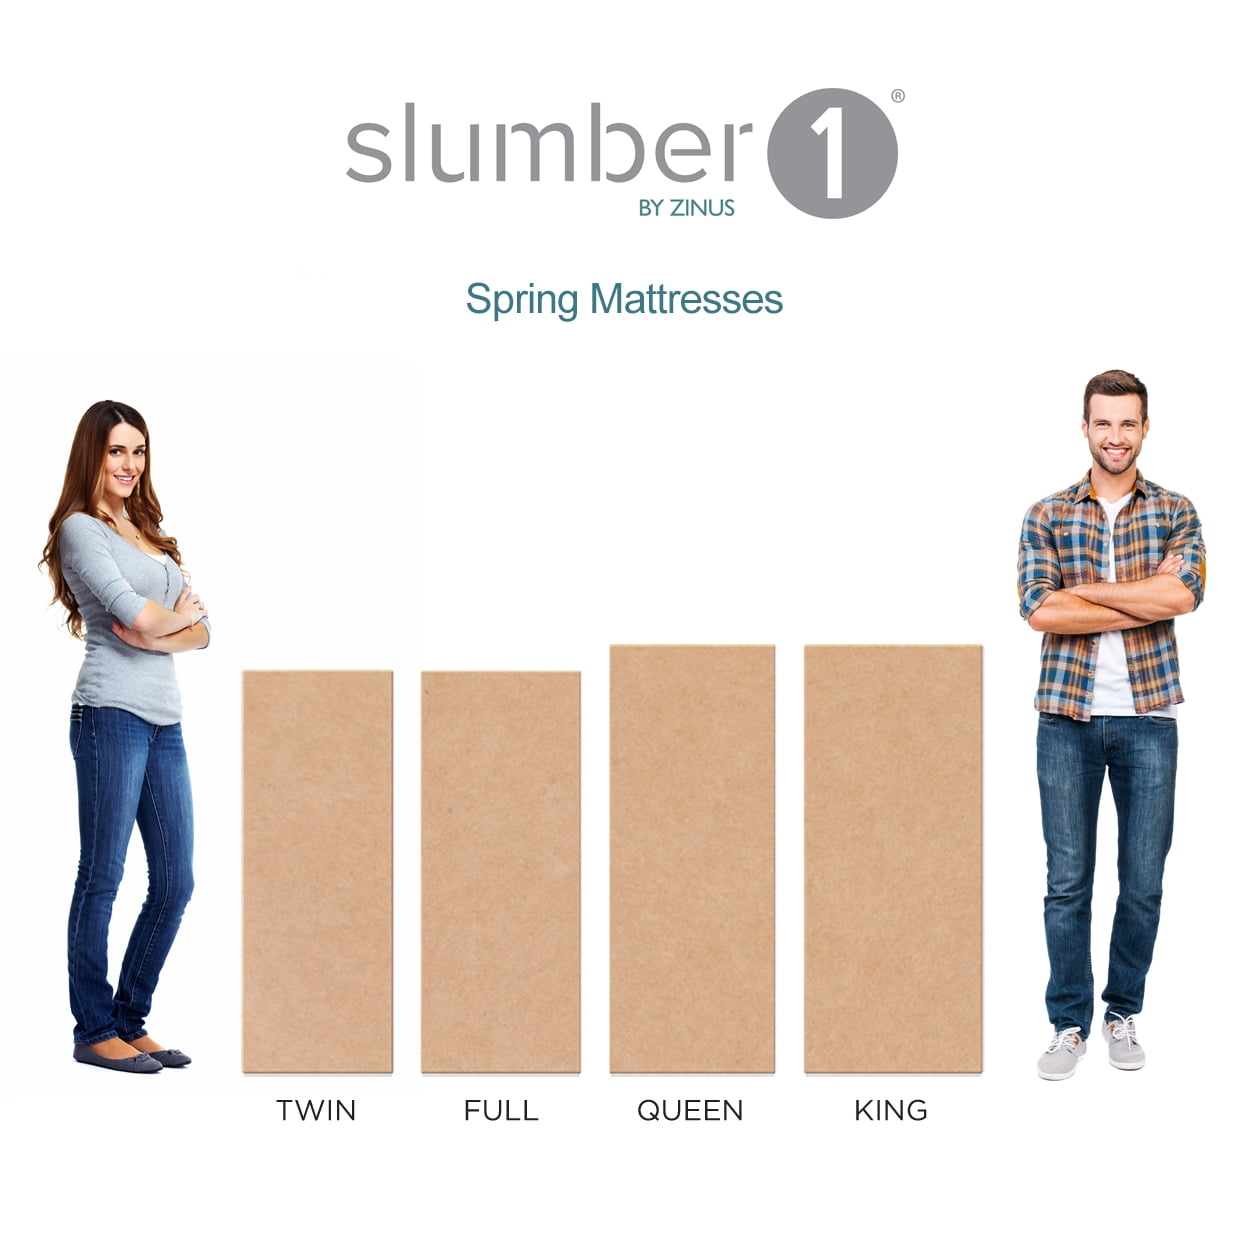 Slumber 1 By Zinus Comfort 6 Twin, Slumber 1 Comfort 6 Twin Pack Bunk Bed Spring Mattress